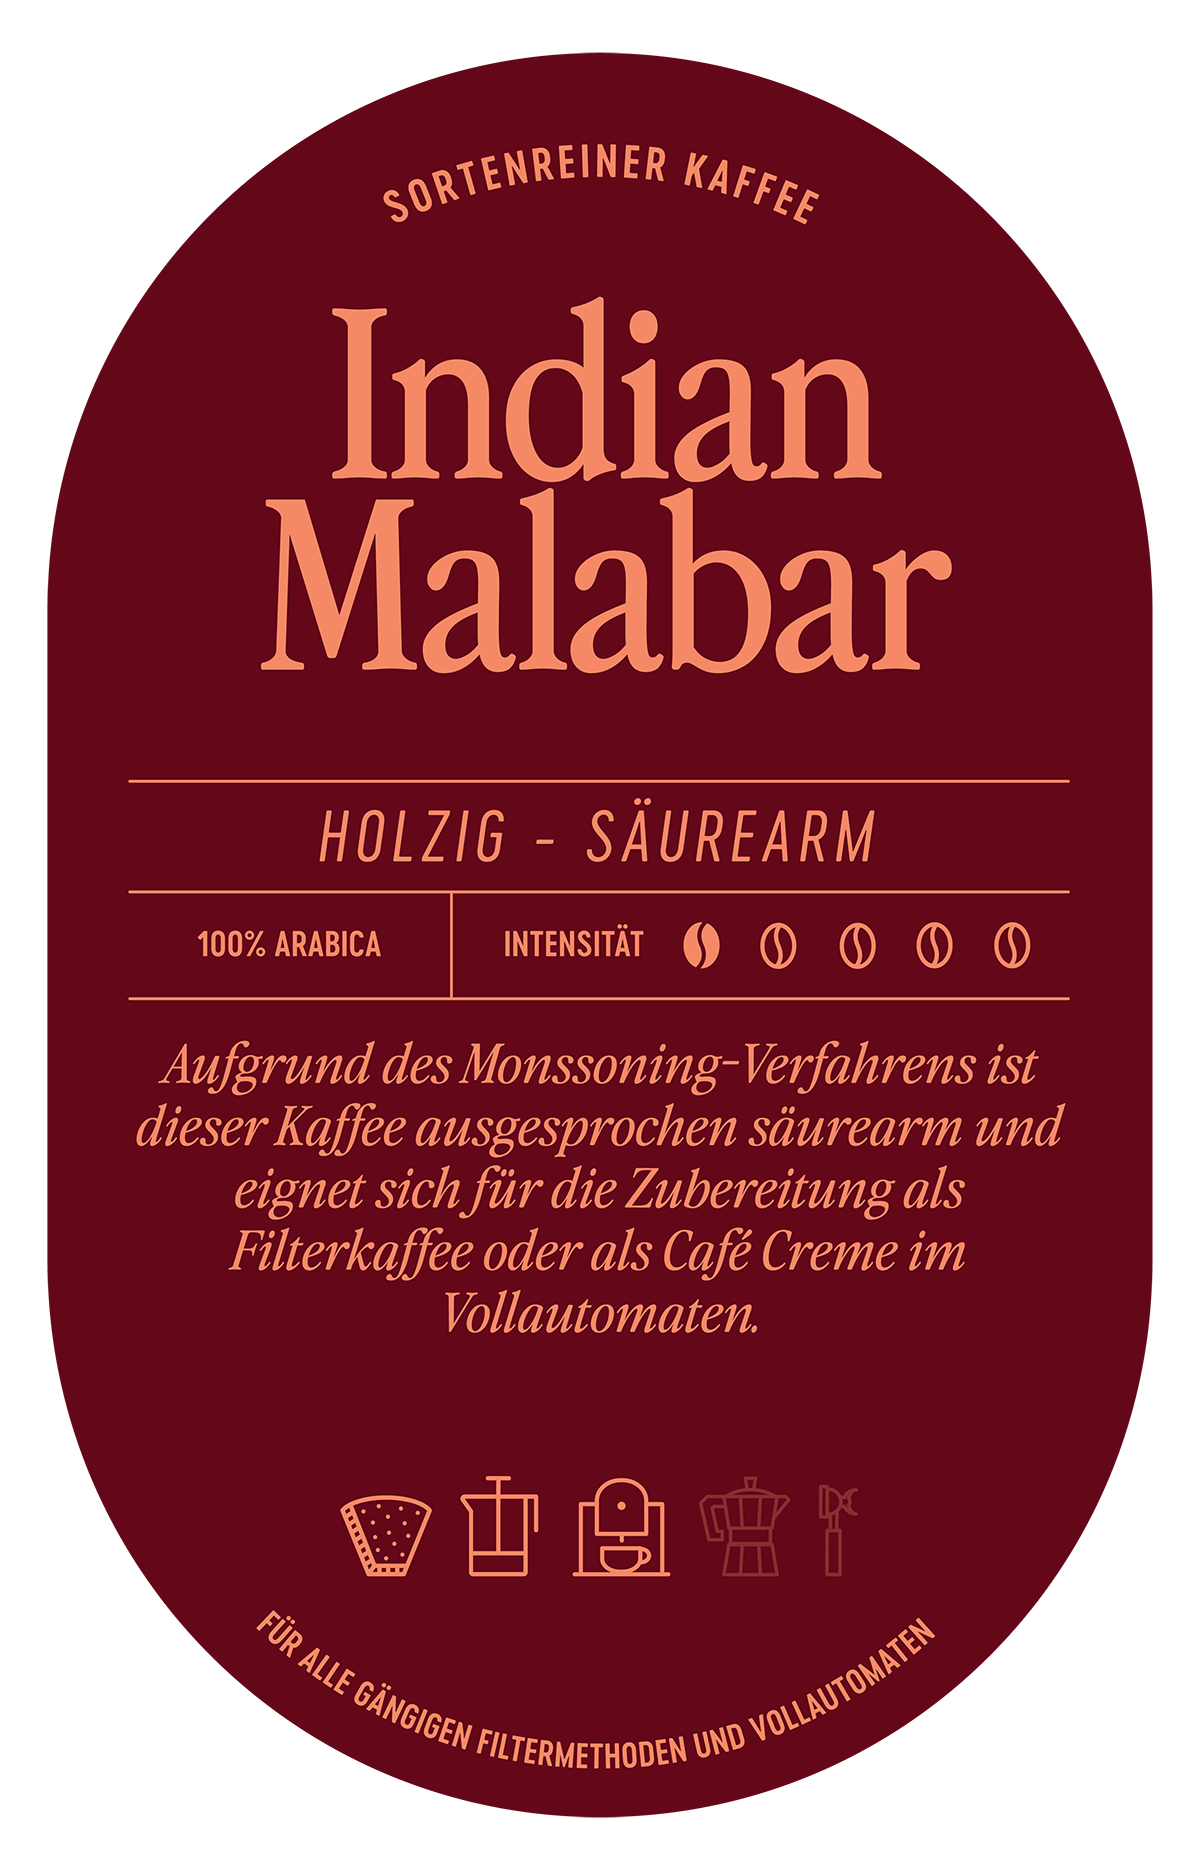 Indien Malabar Kaffee Label